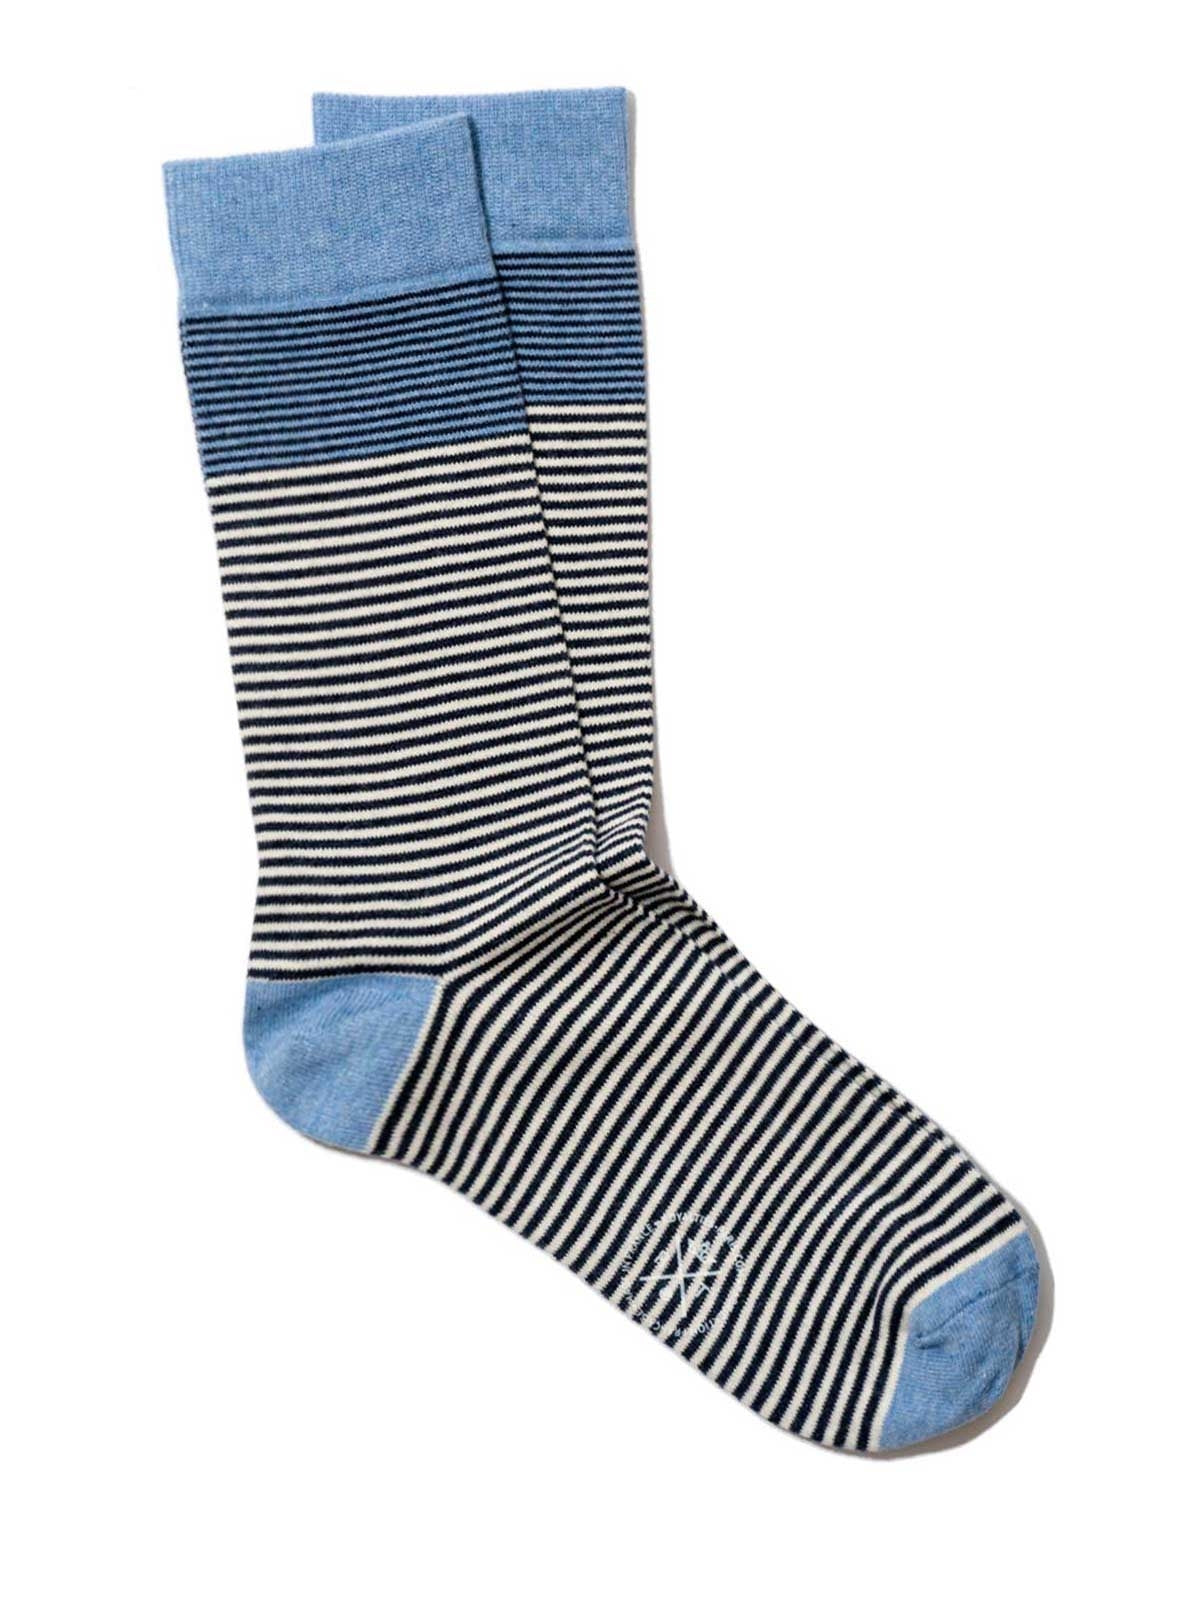 Breton Stripes Socks - Ciel